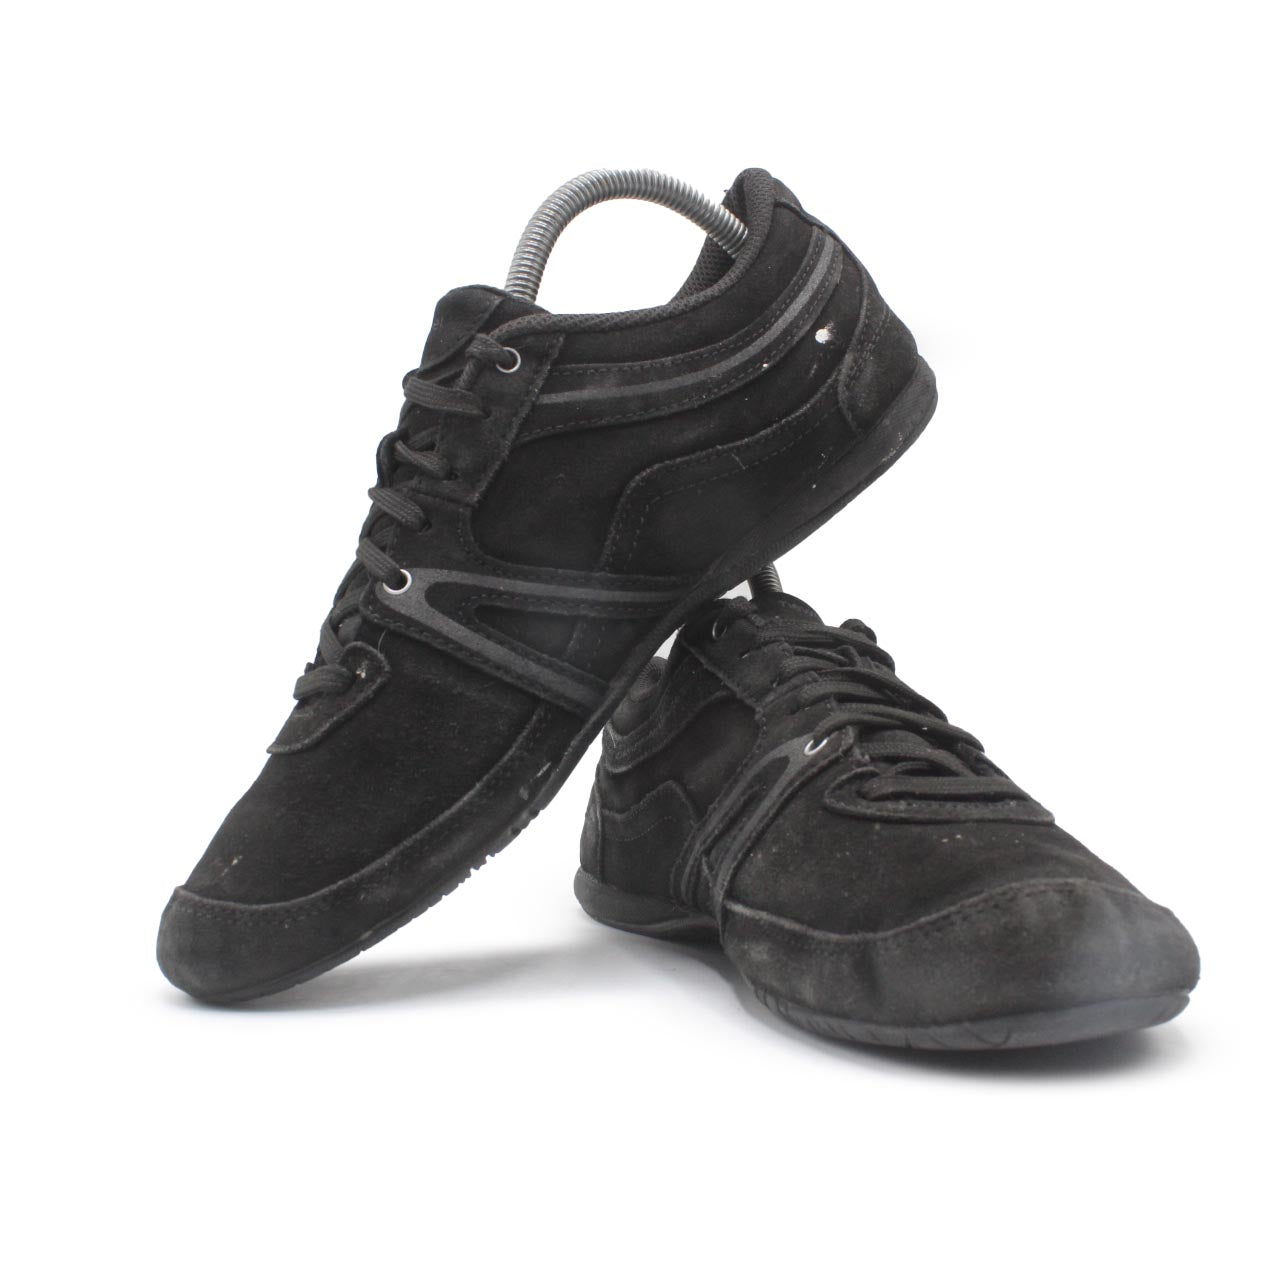 Newfeel Pajing Women Casual Shoe